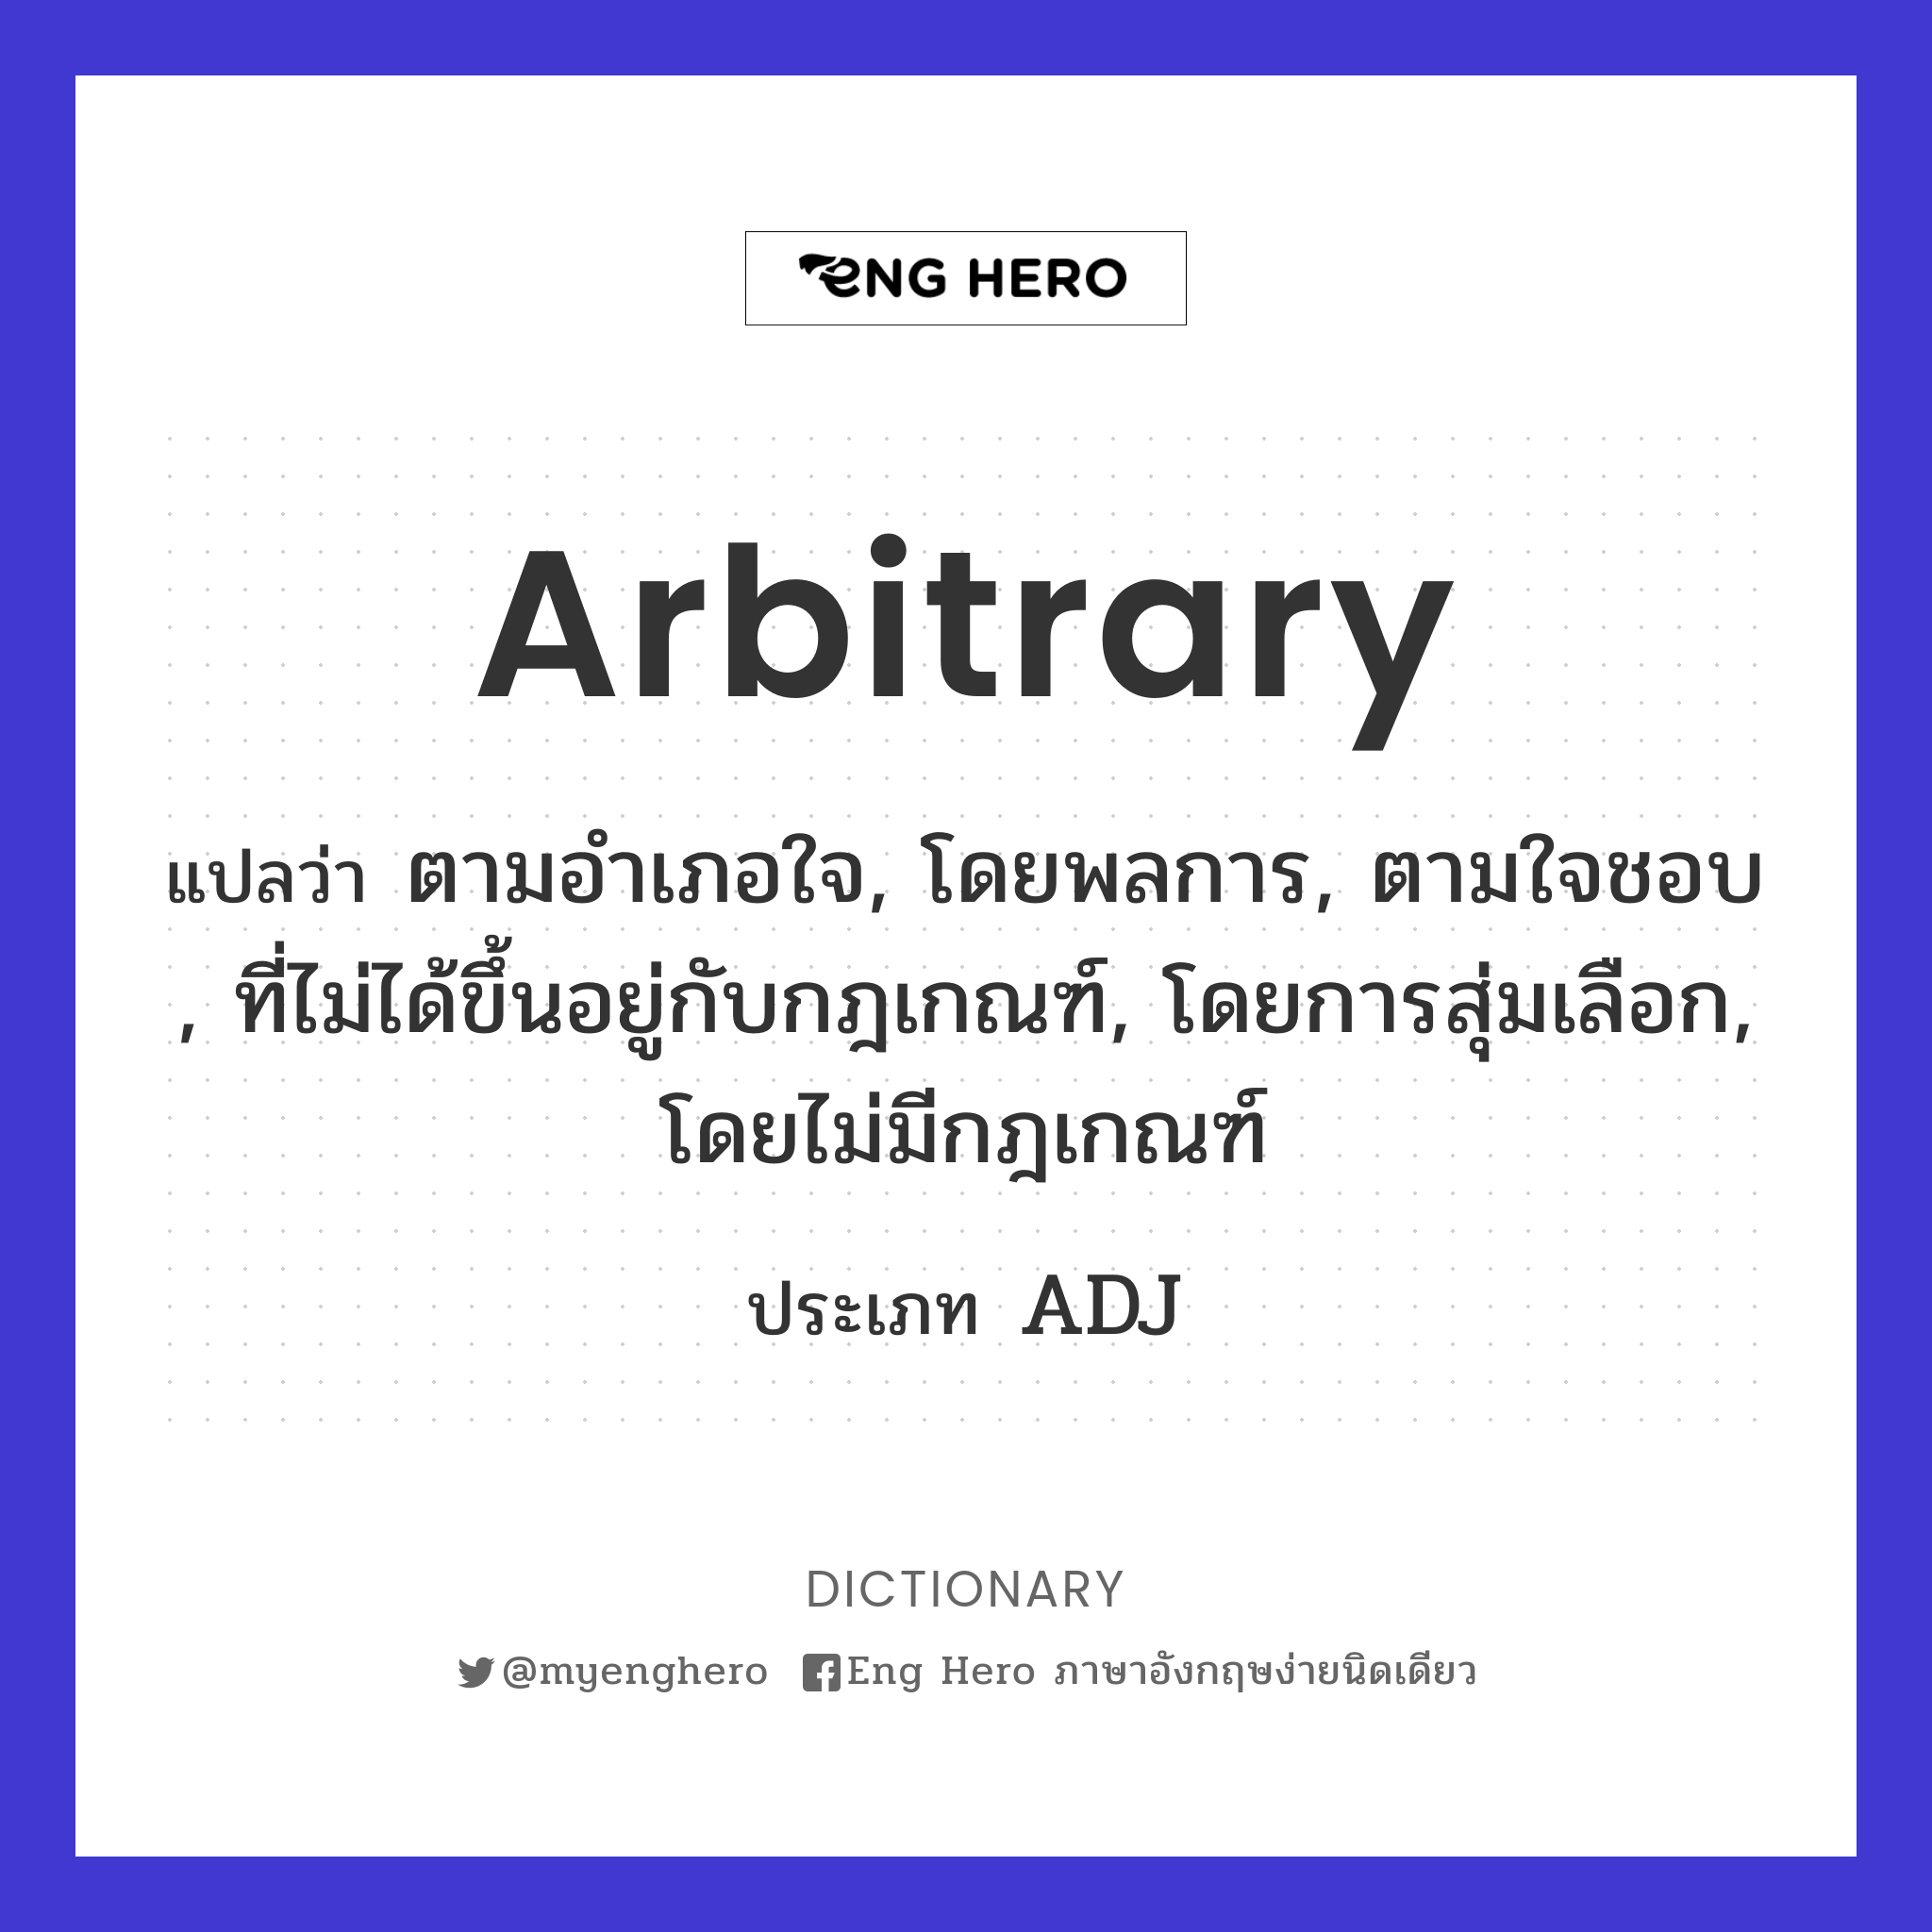 arbitrary